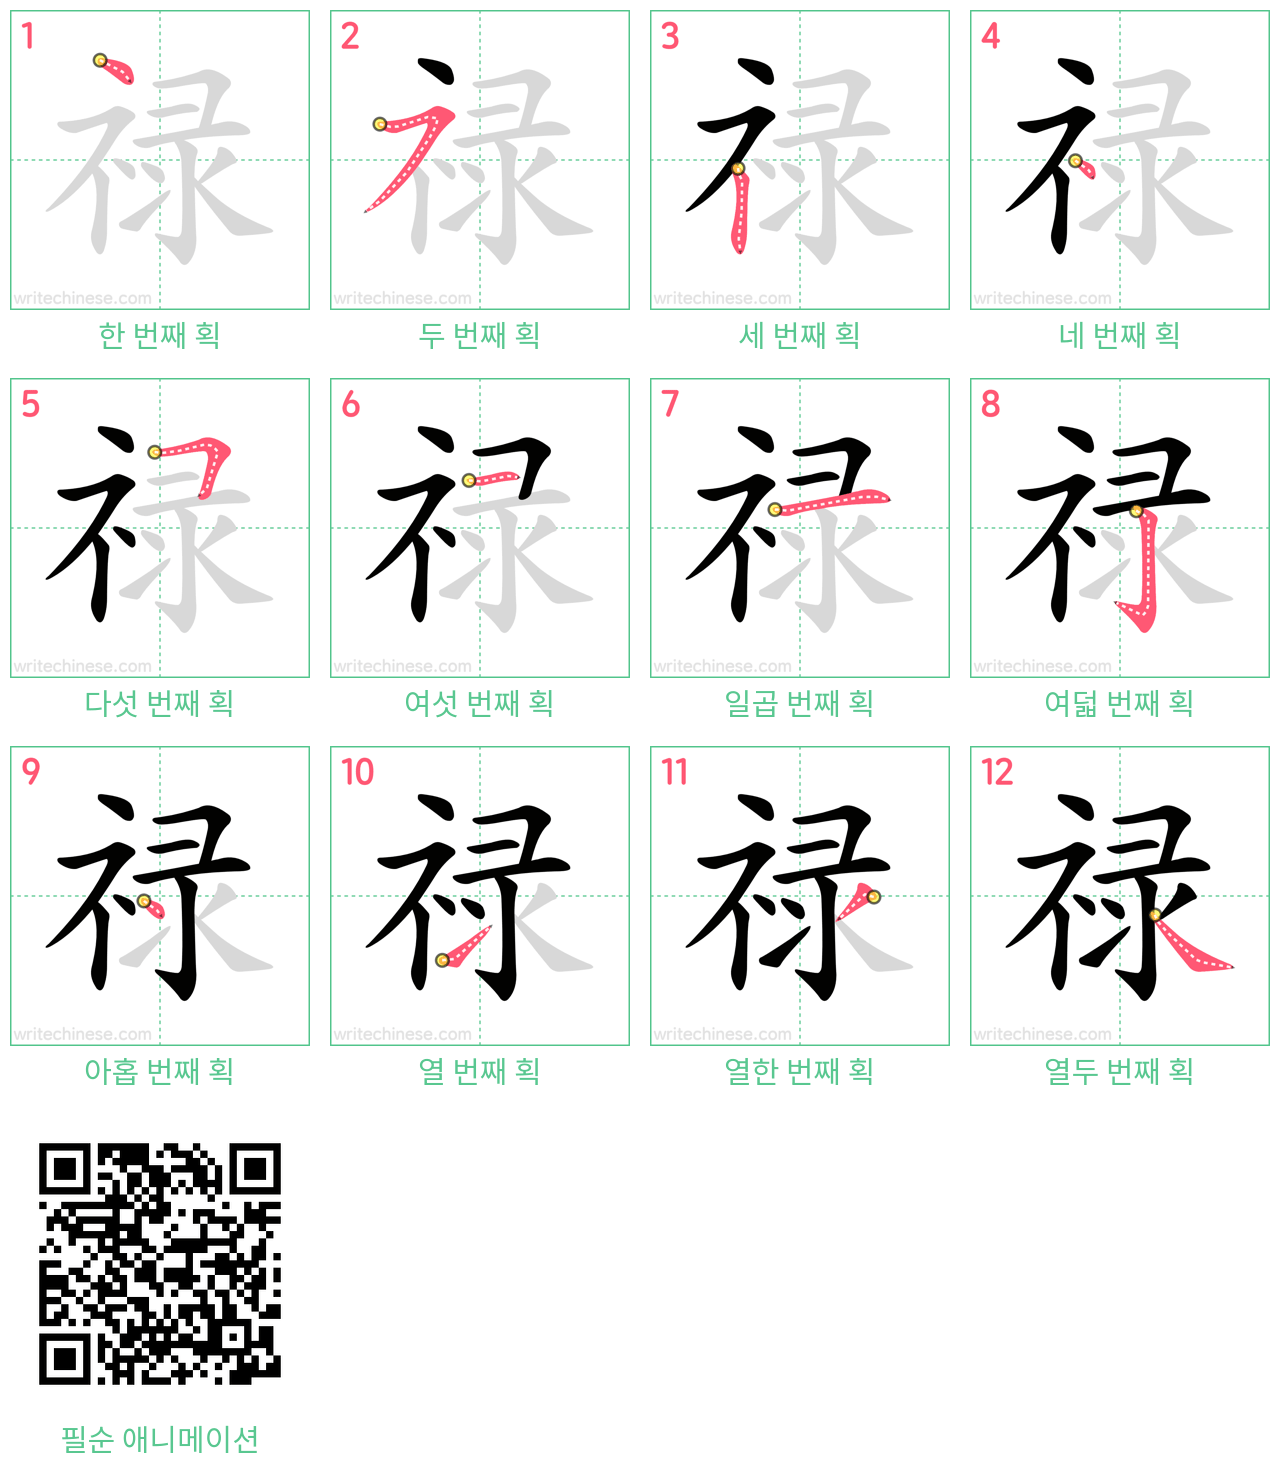 禄 step-by-step stroke order diagrams